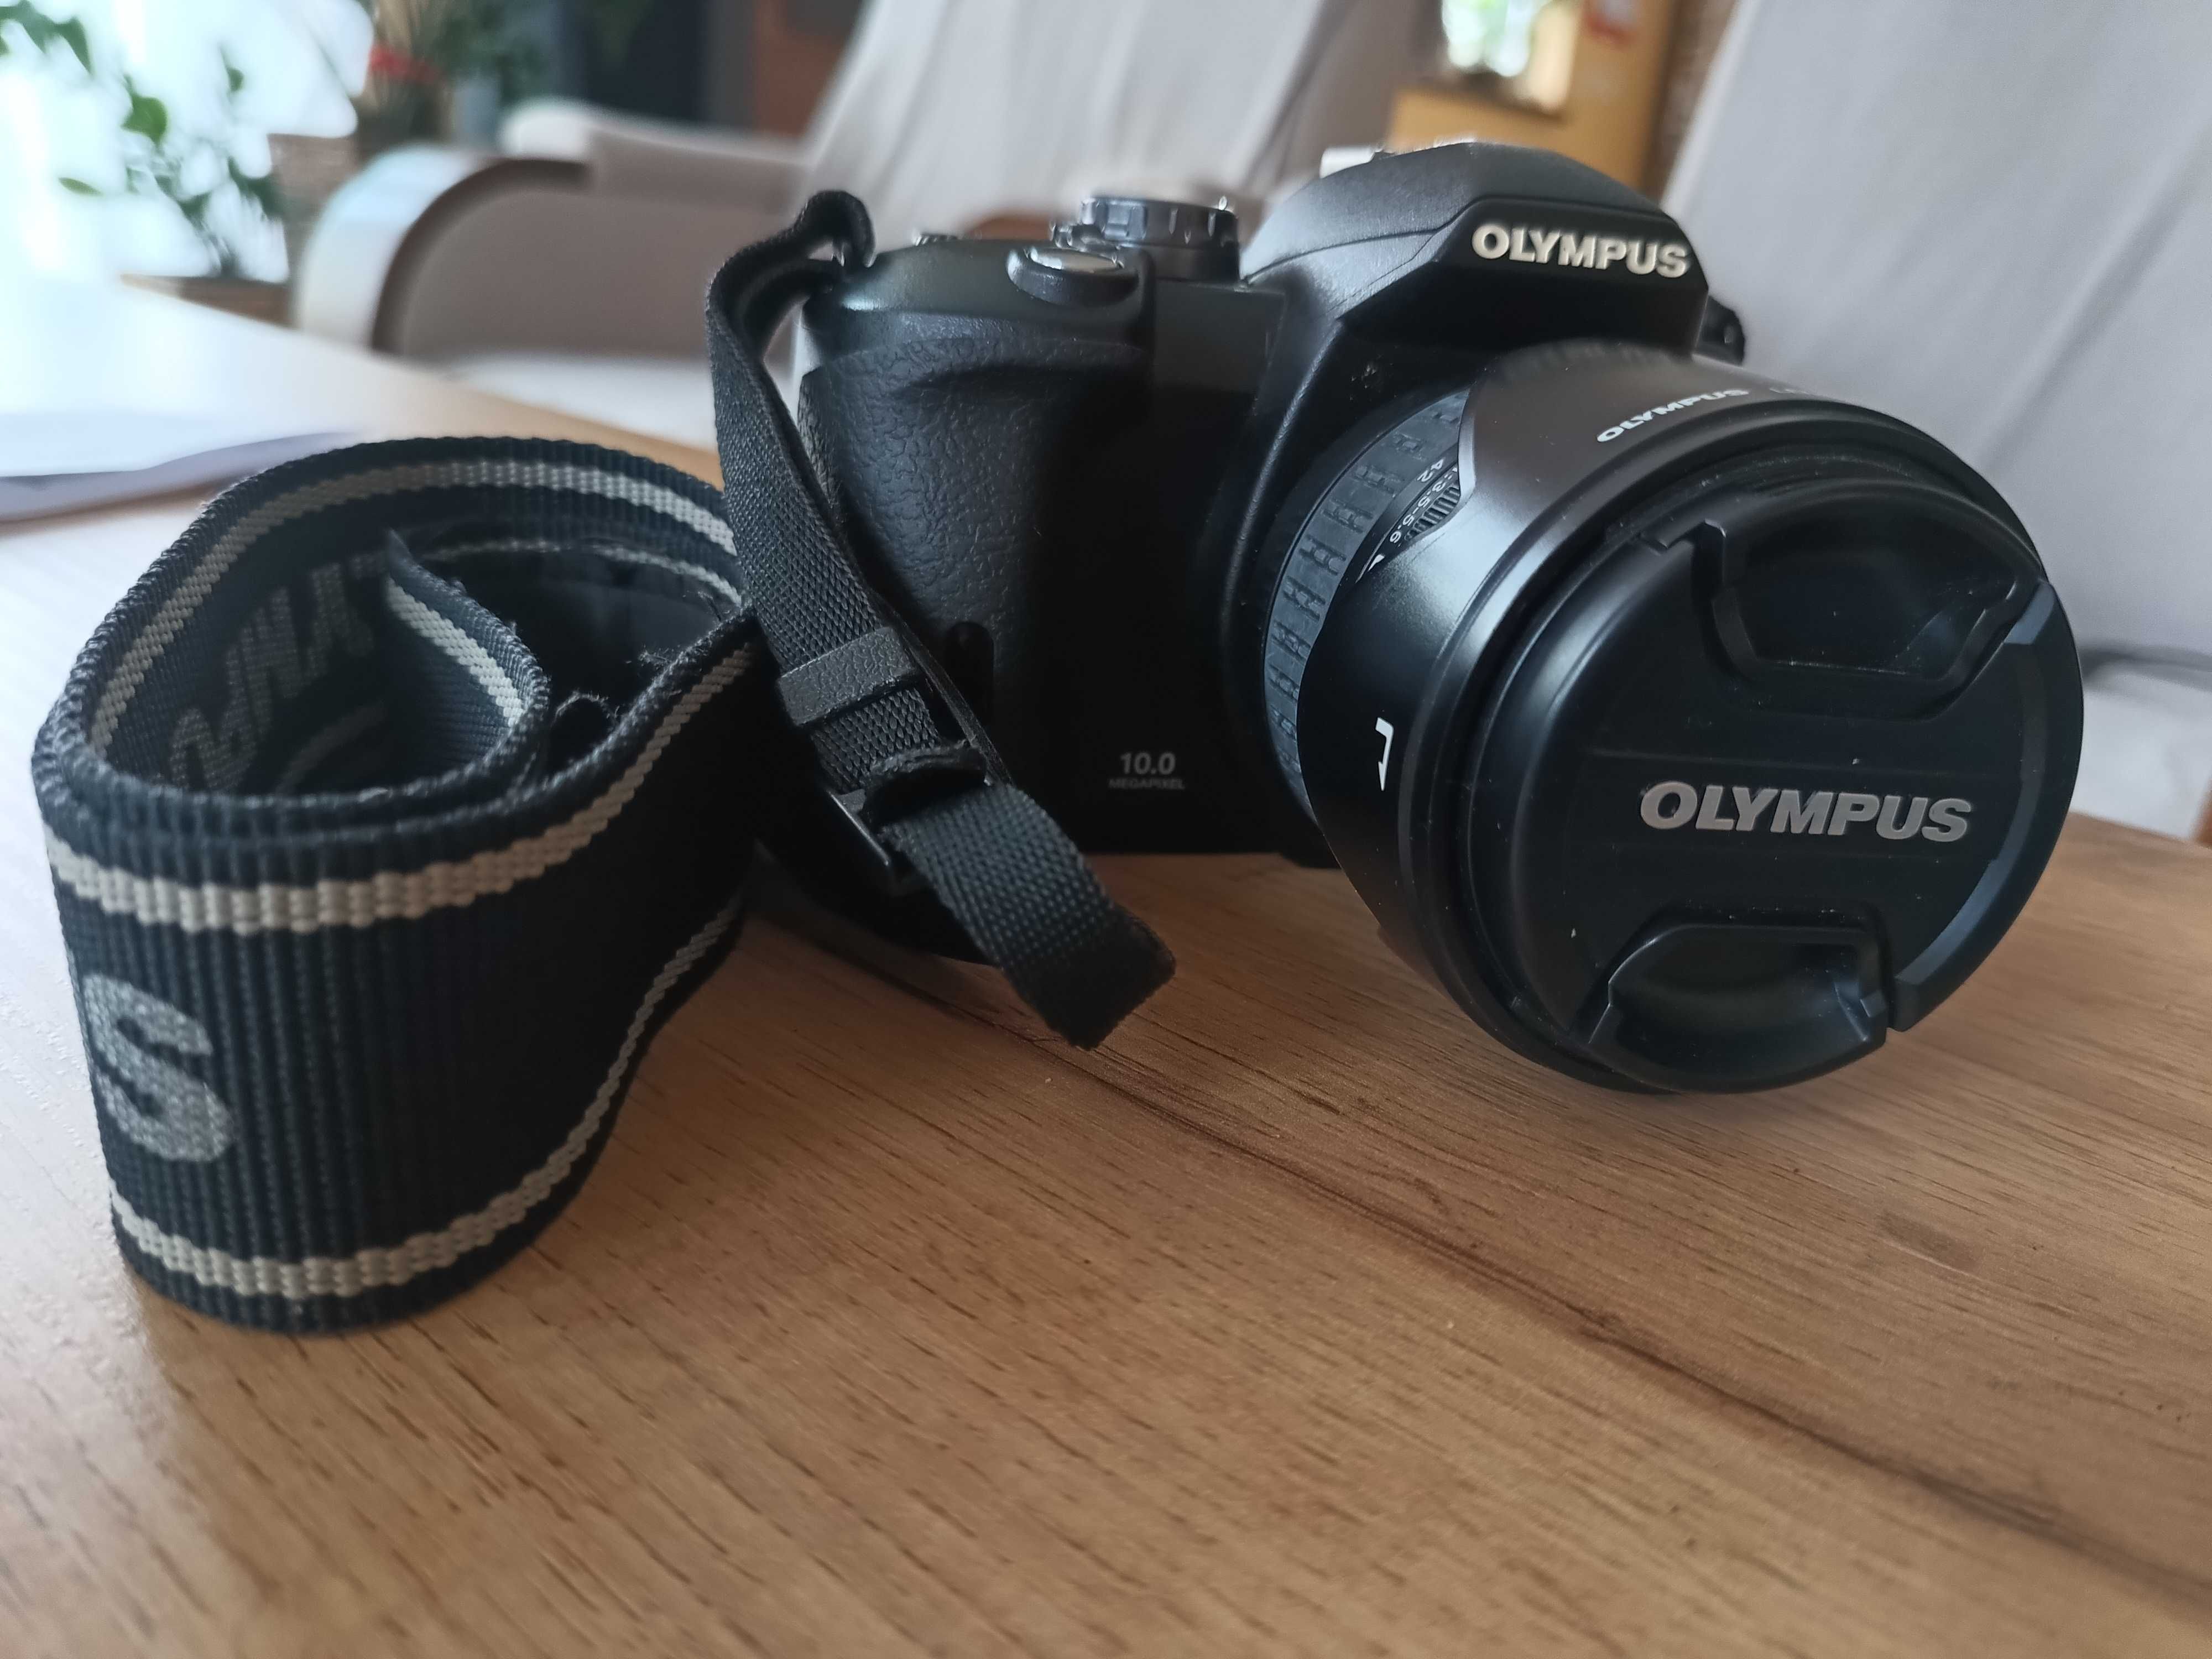 Aparat Olympus E-510 oraz obiektyw Zuiko Digital ED 70-300mm f4.0-5.6